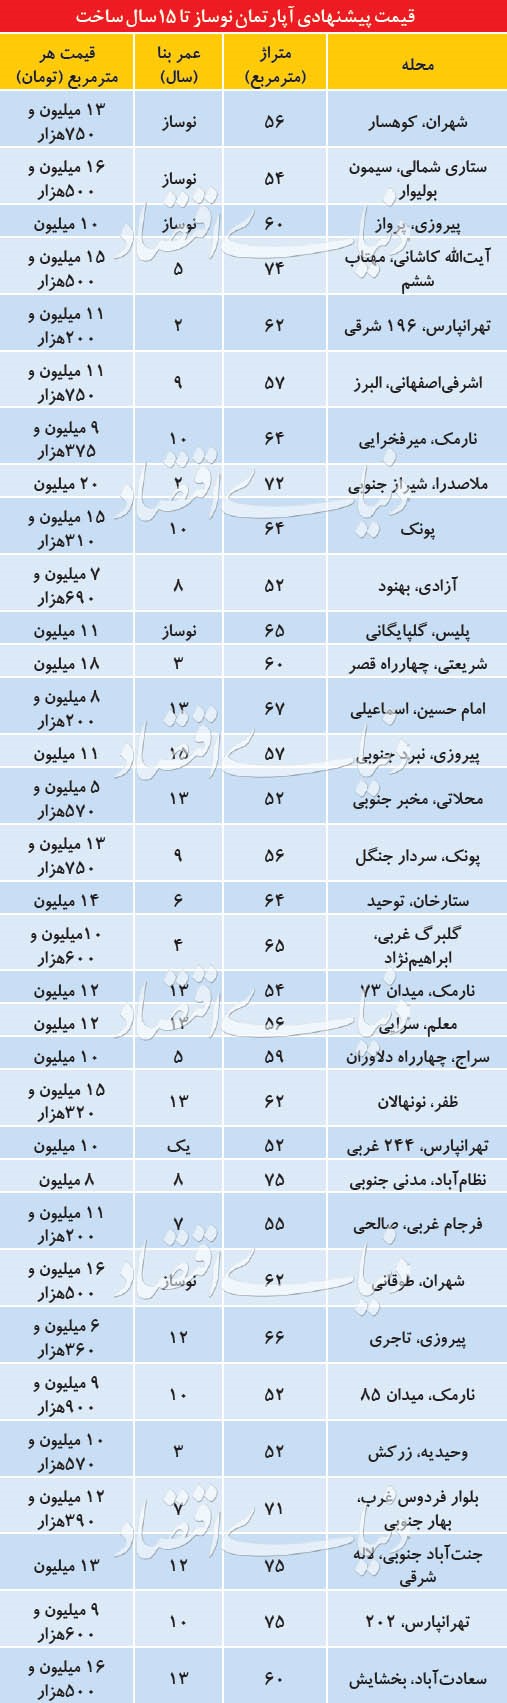 مروری بر قیمت واحد های زیر 15 سال در تهران